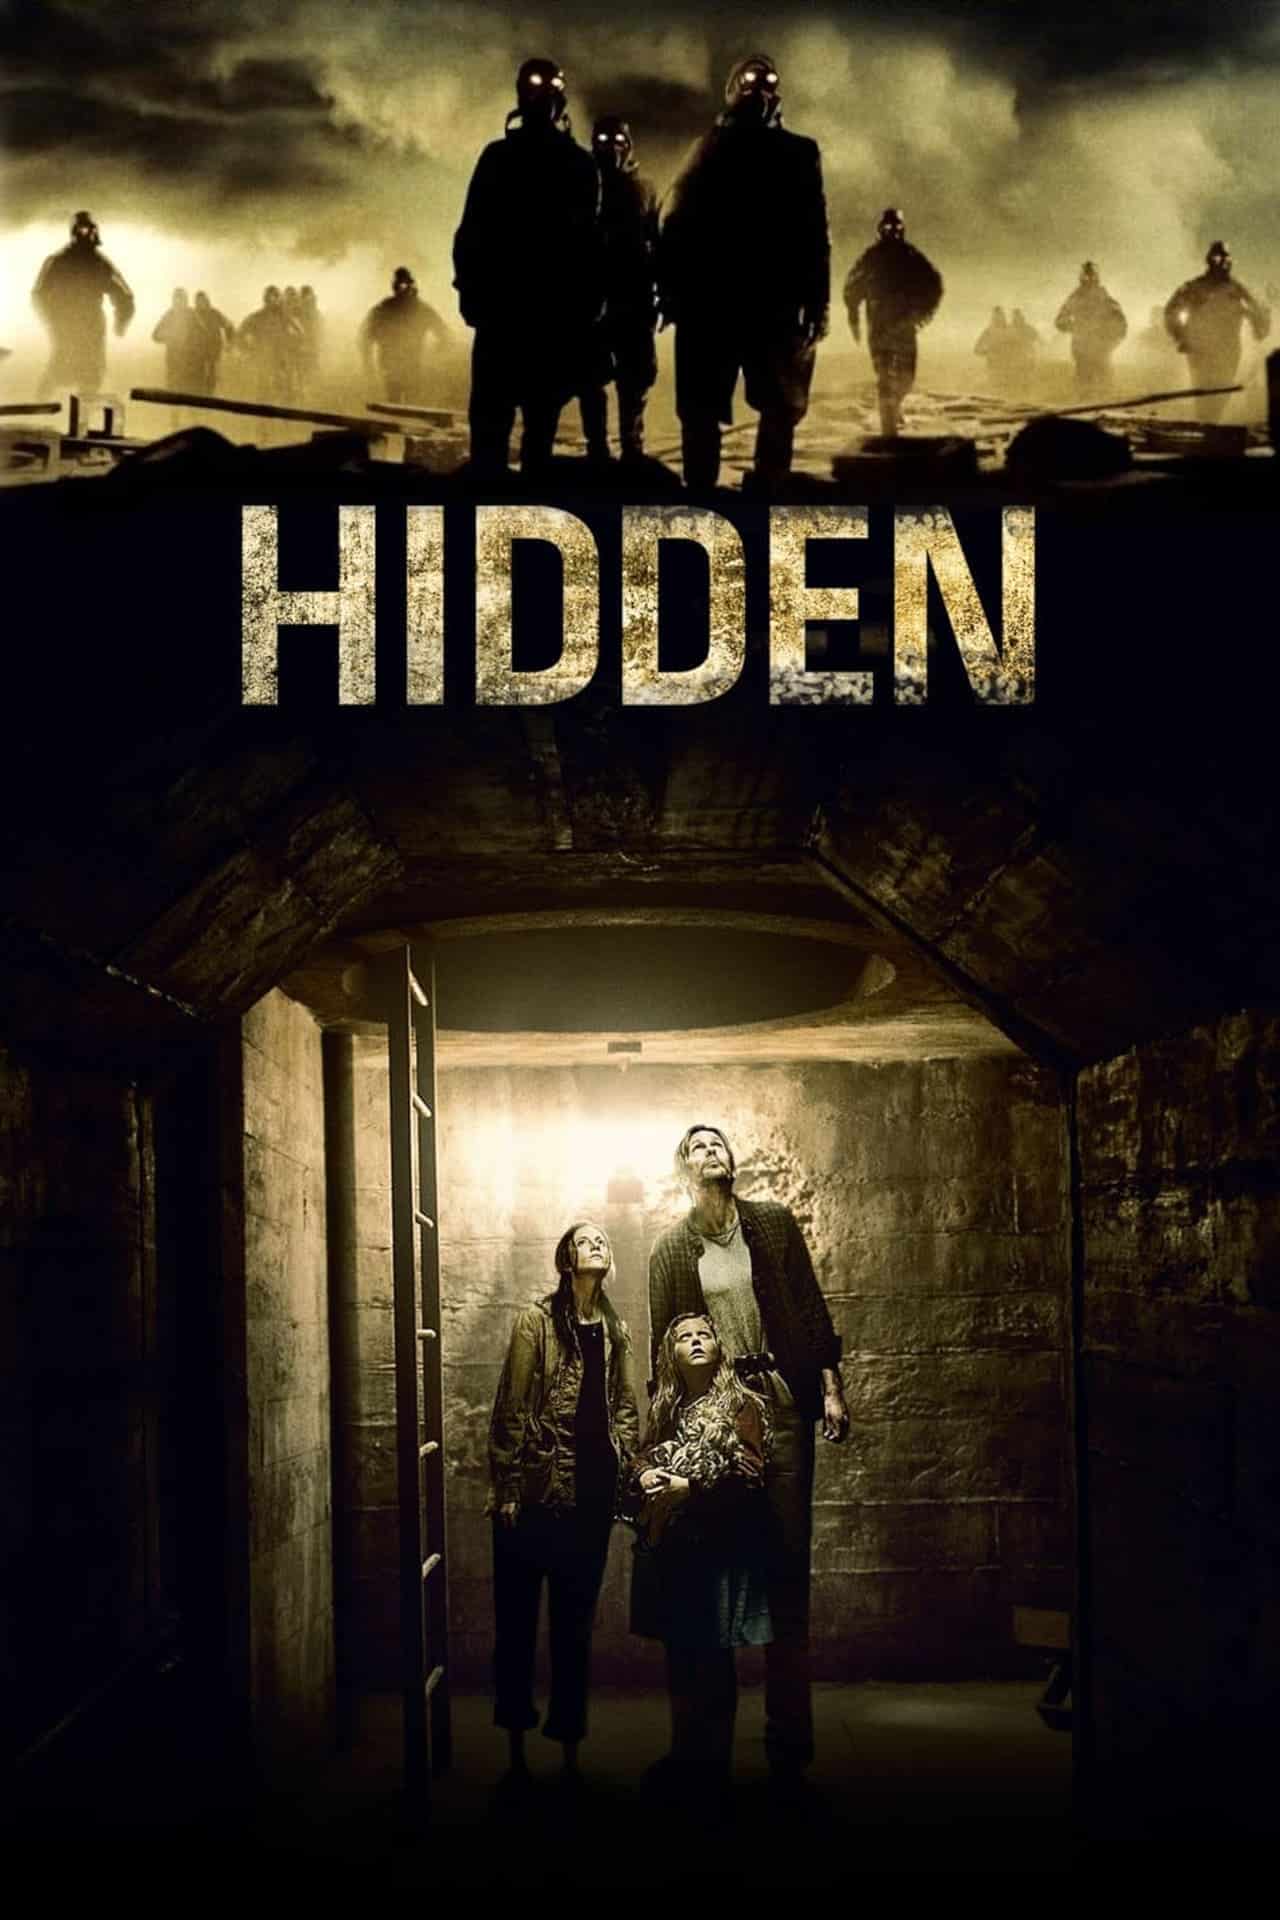 Hidden (2015) ซ่อนนรกใต้โลก